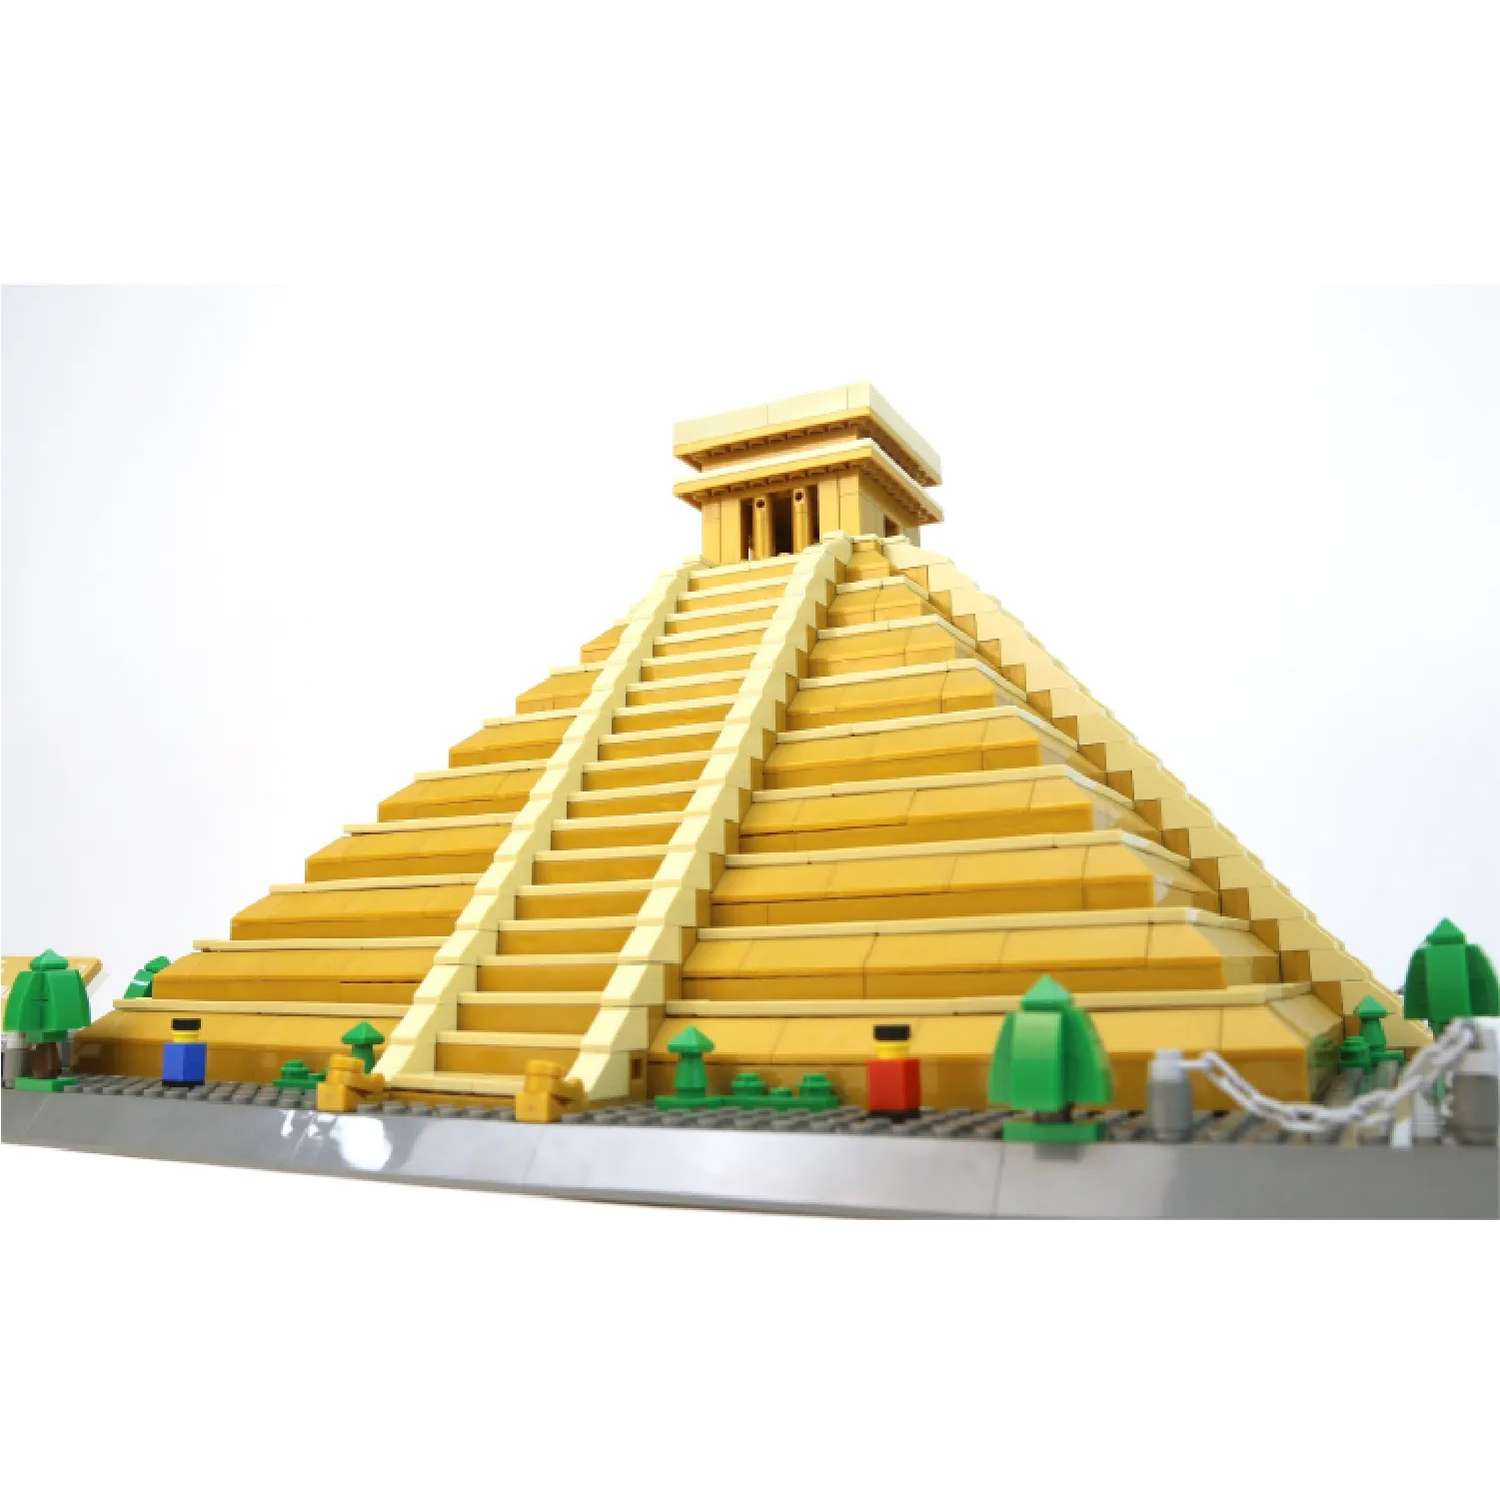 Архитектура мира Wange Мексика Эль-Кастильо-Кукулькан Пирамида майя 1340 шт. - фото 11